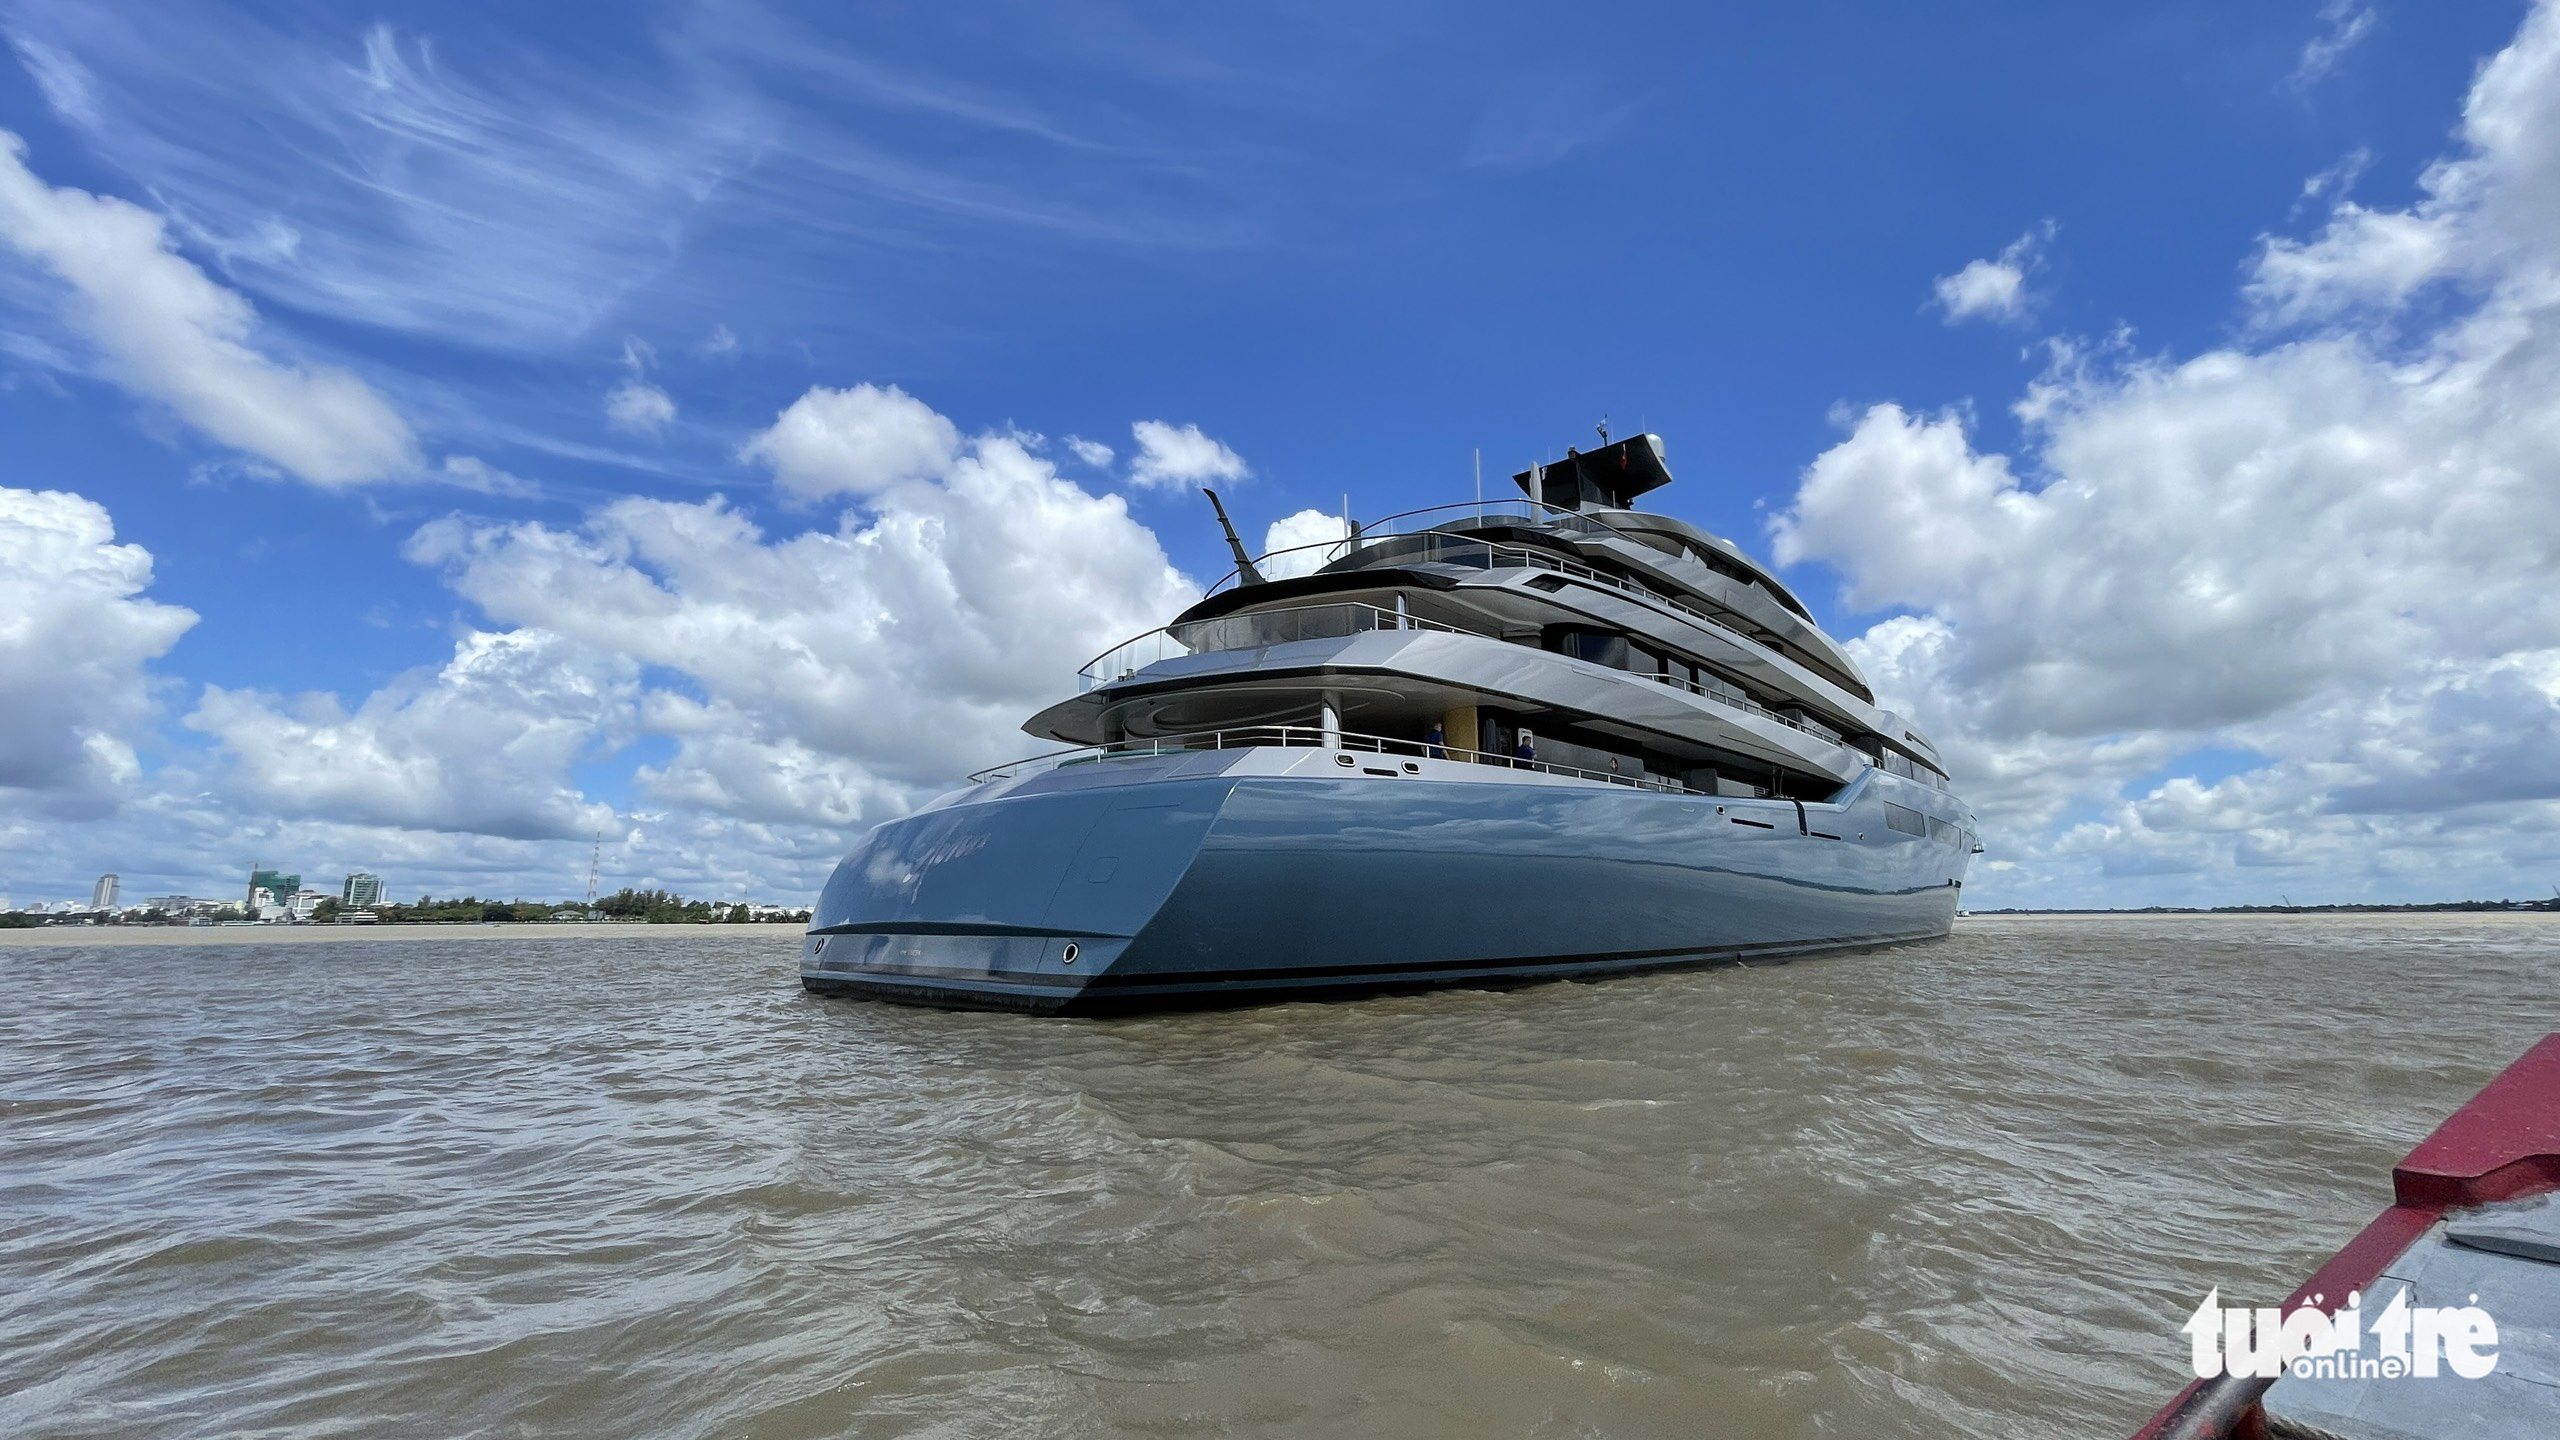 British billionaire sails Aviva yacht to Vietnam again